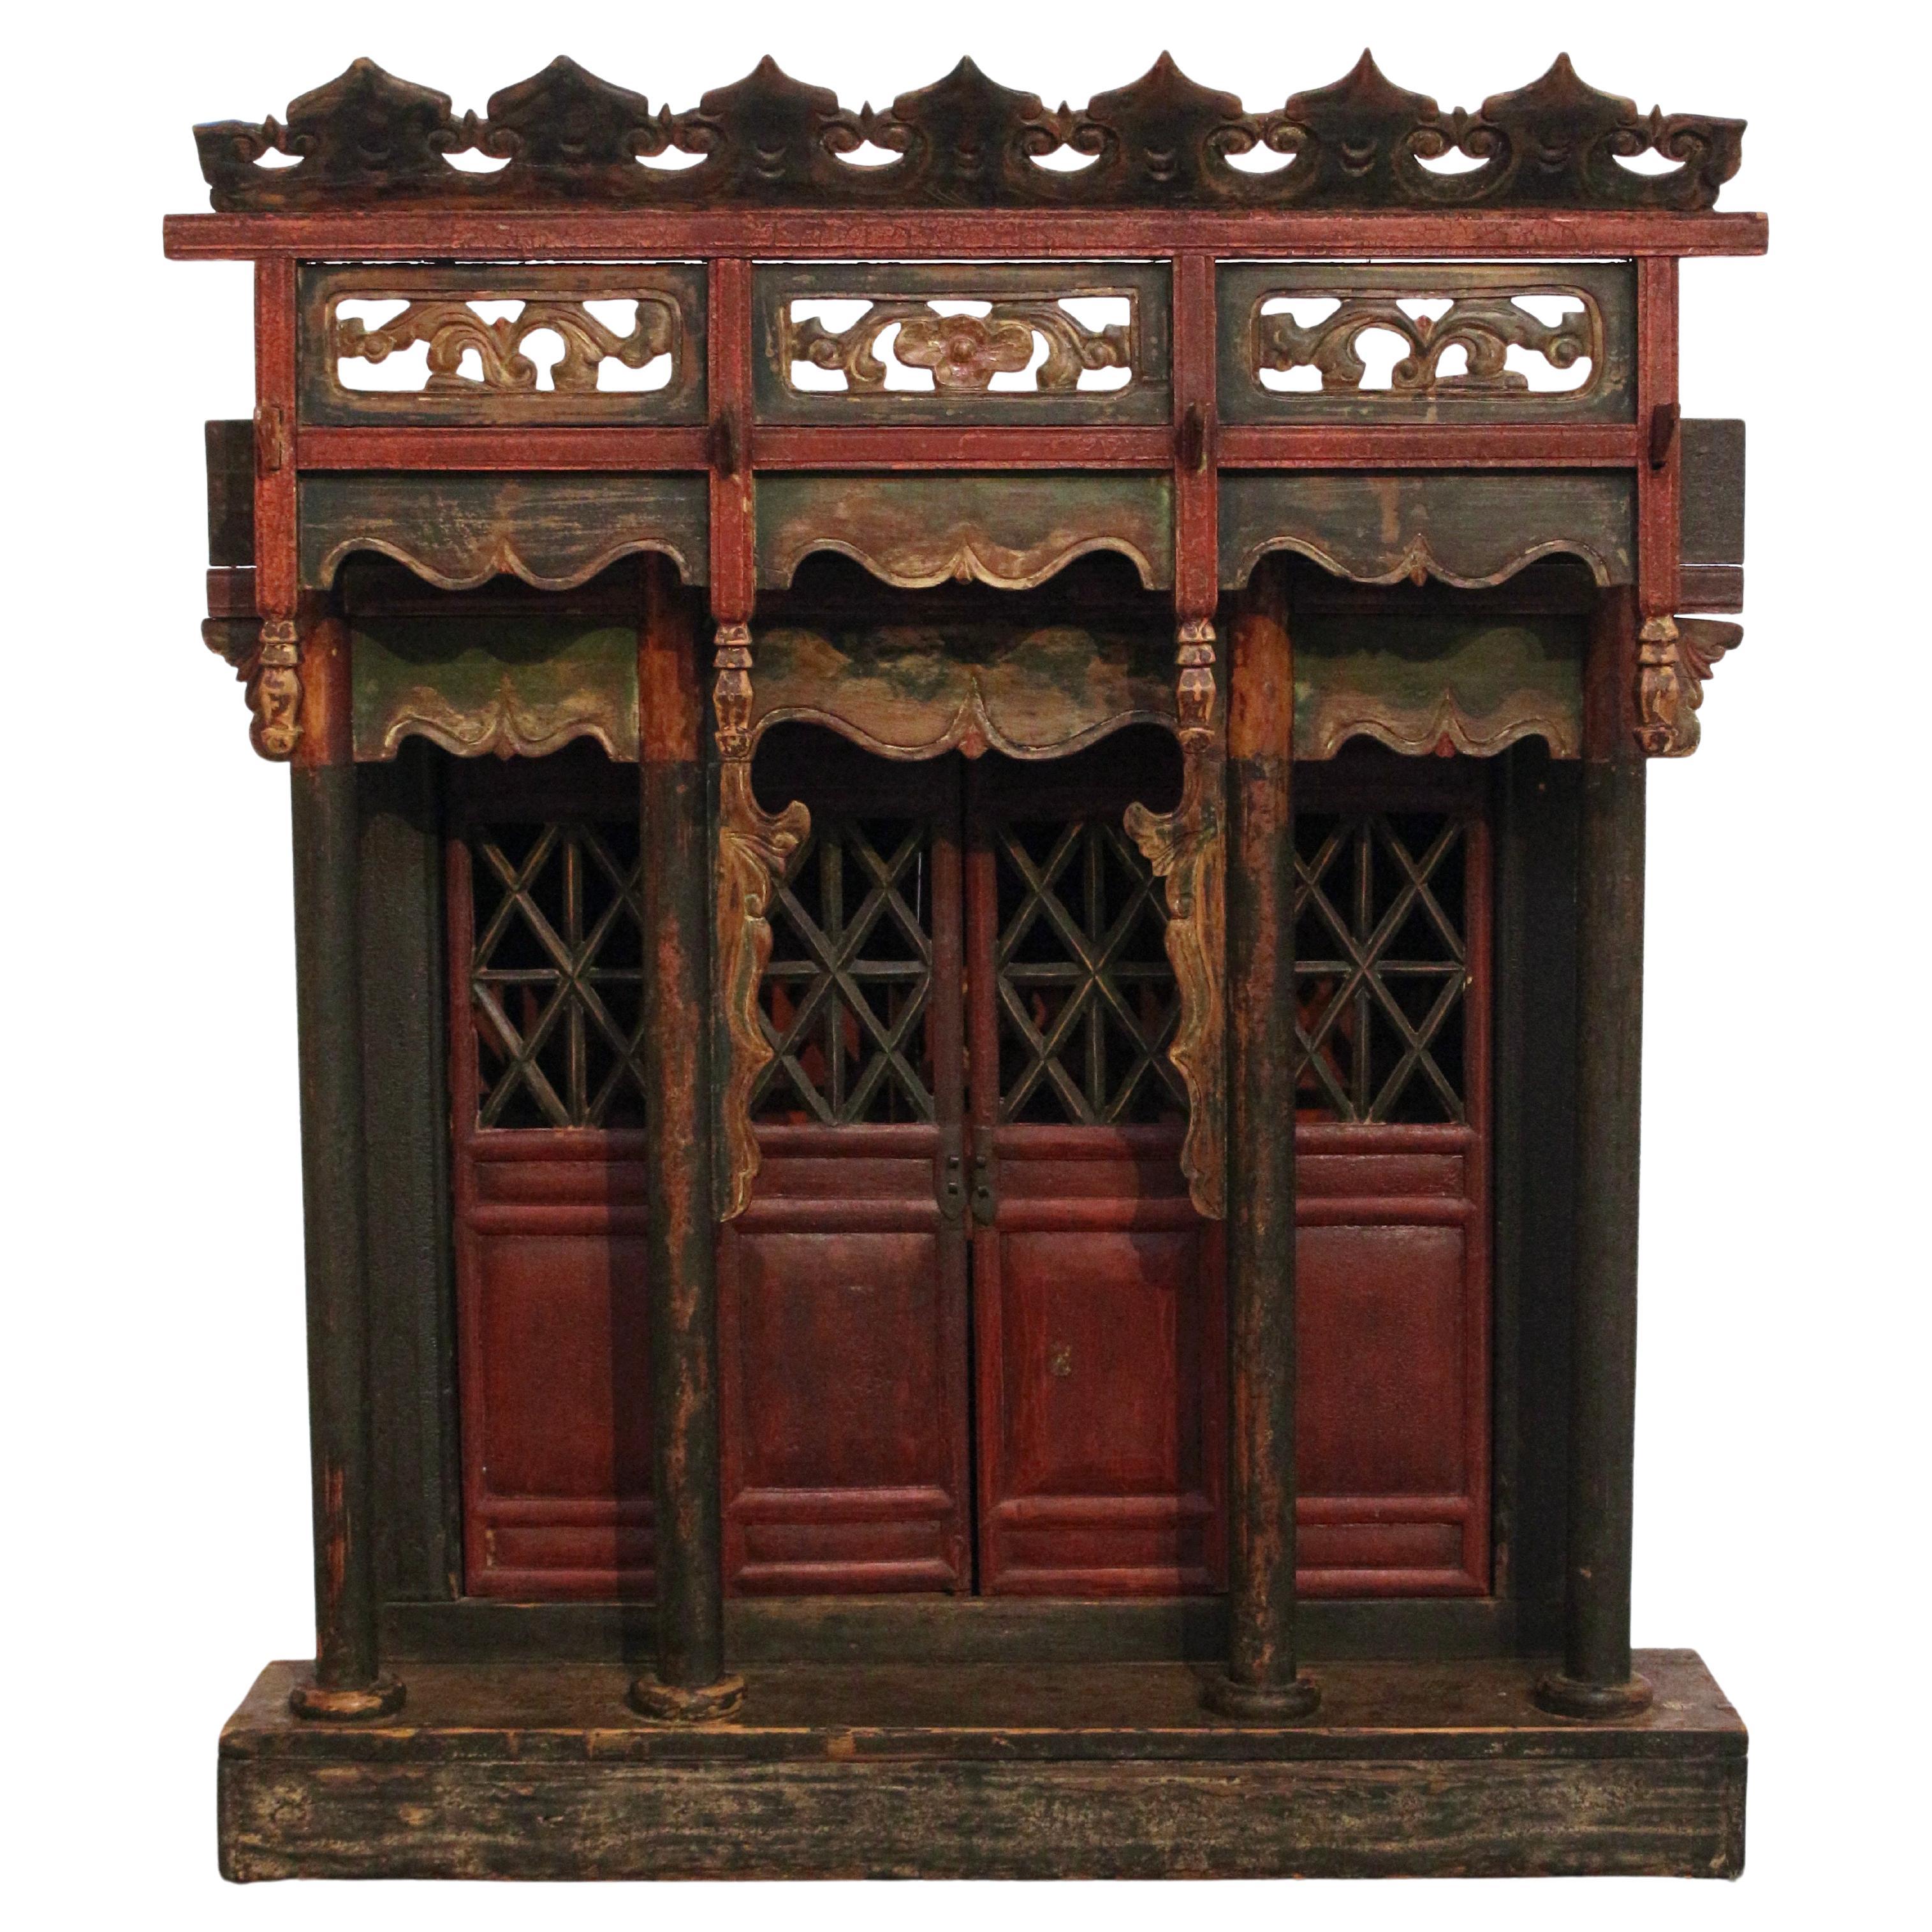 Chinesisches Spirit House aus Holz aus dem späten 19. Jahrhundert